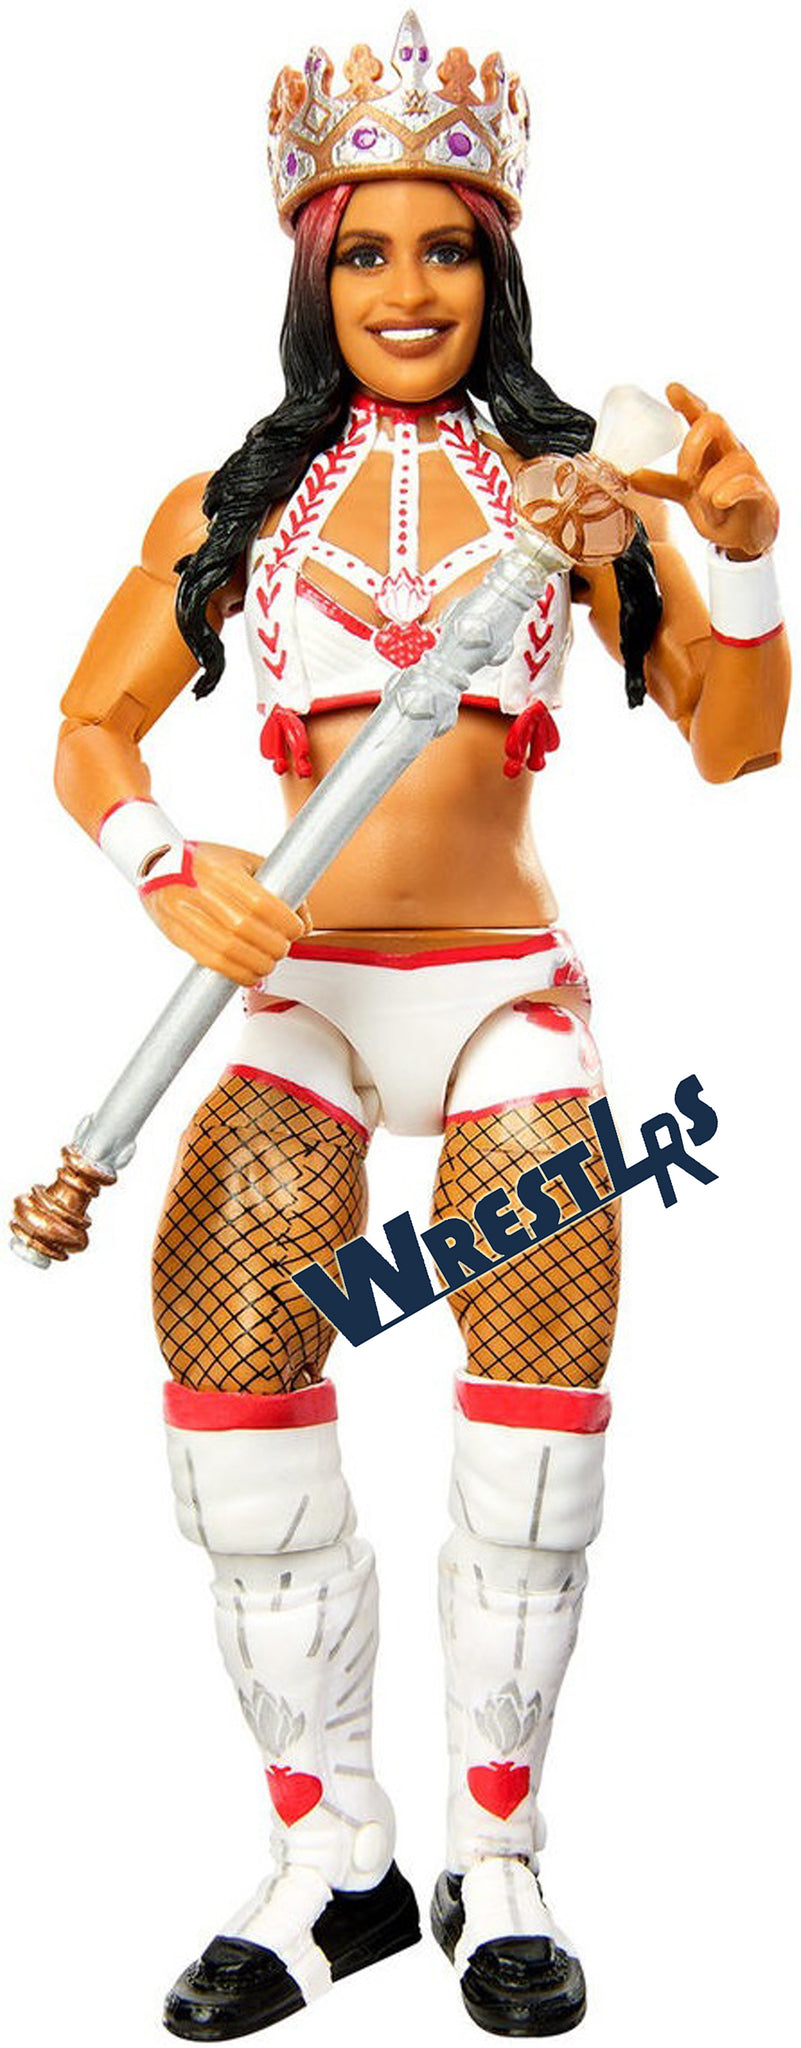 Queen Zelina Vega - WWE Elite 99 WWE Toy Wrestling Action Figure